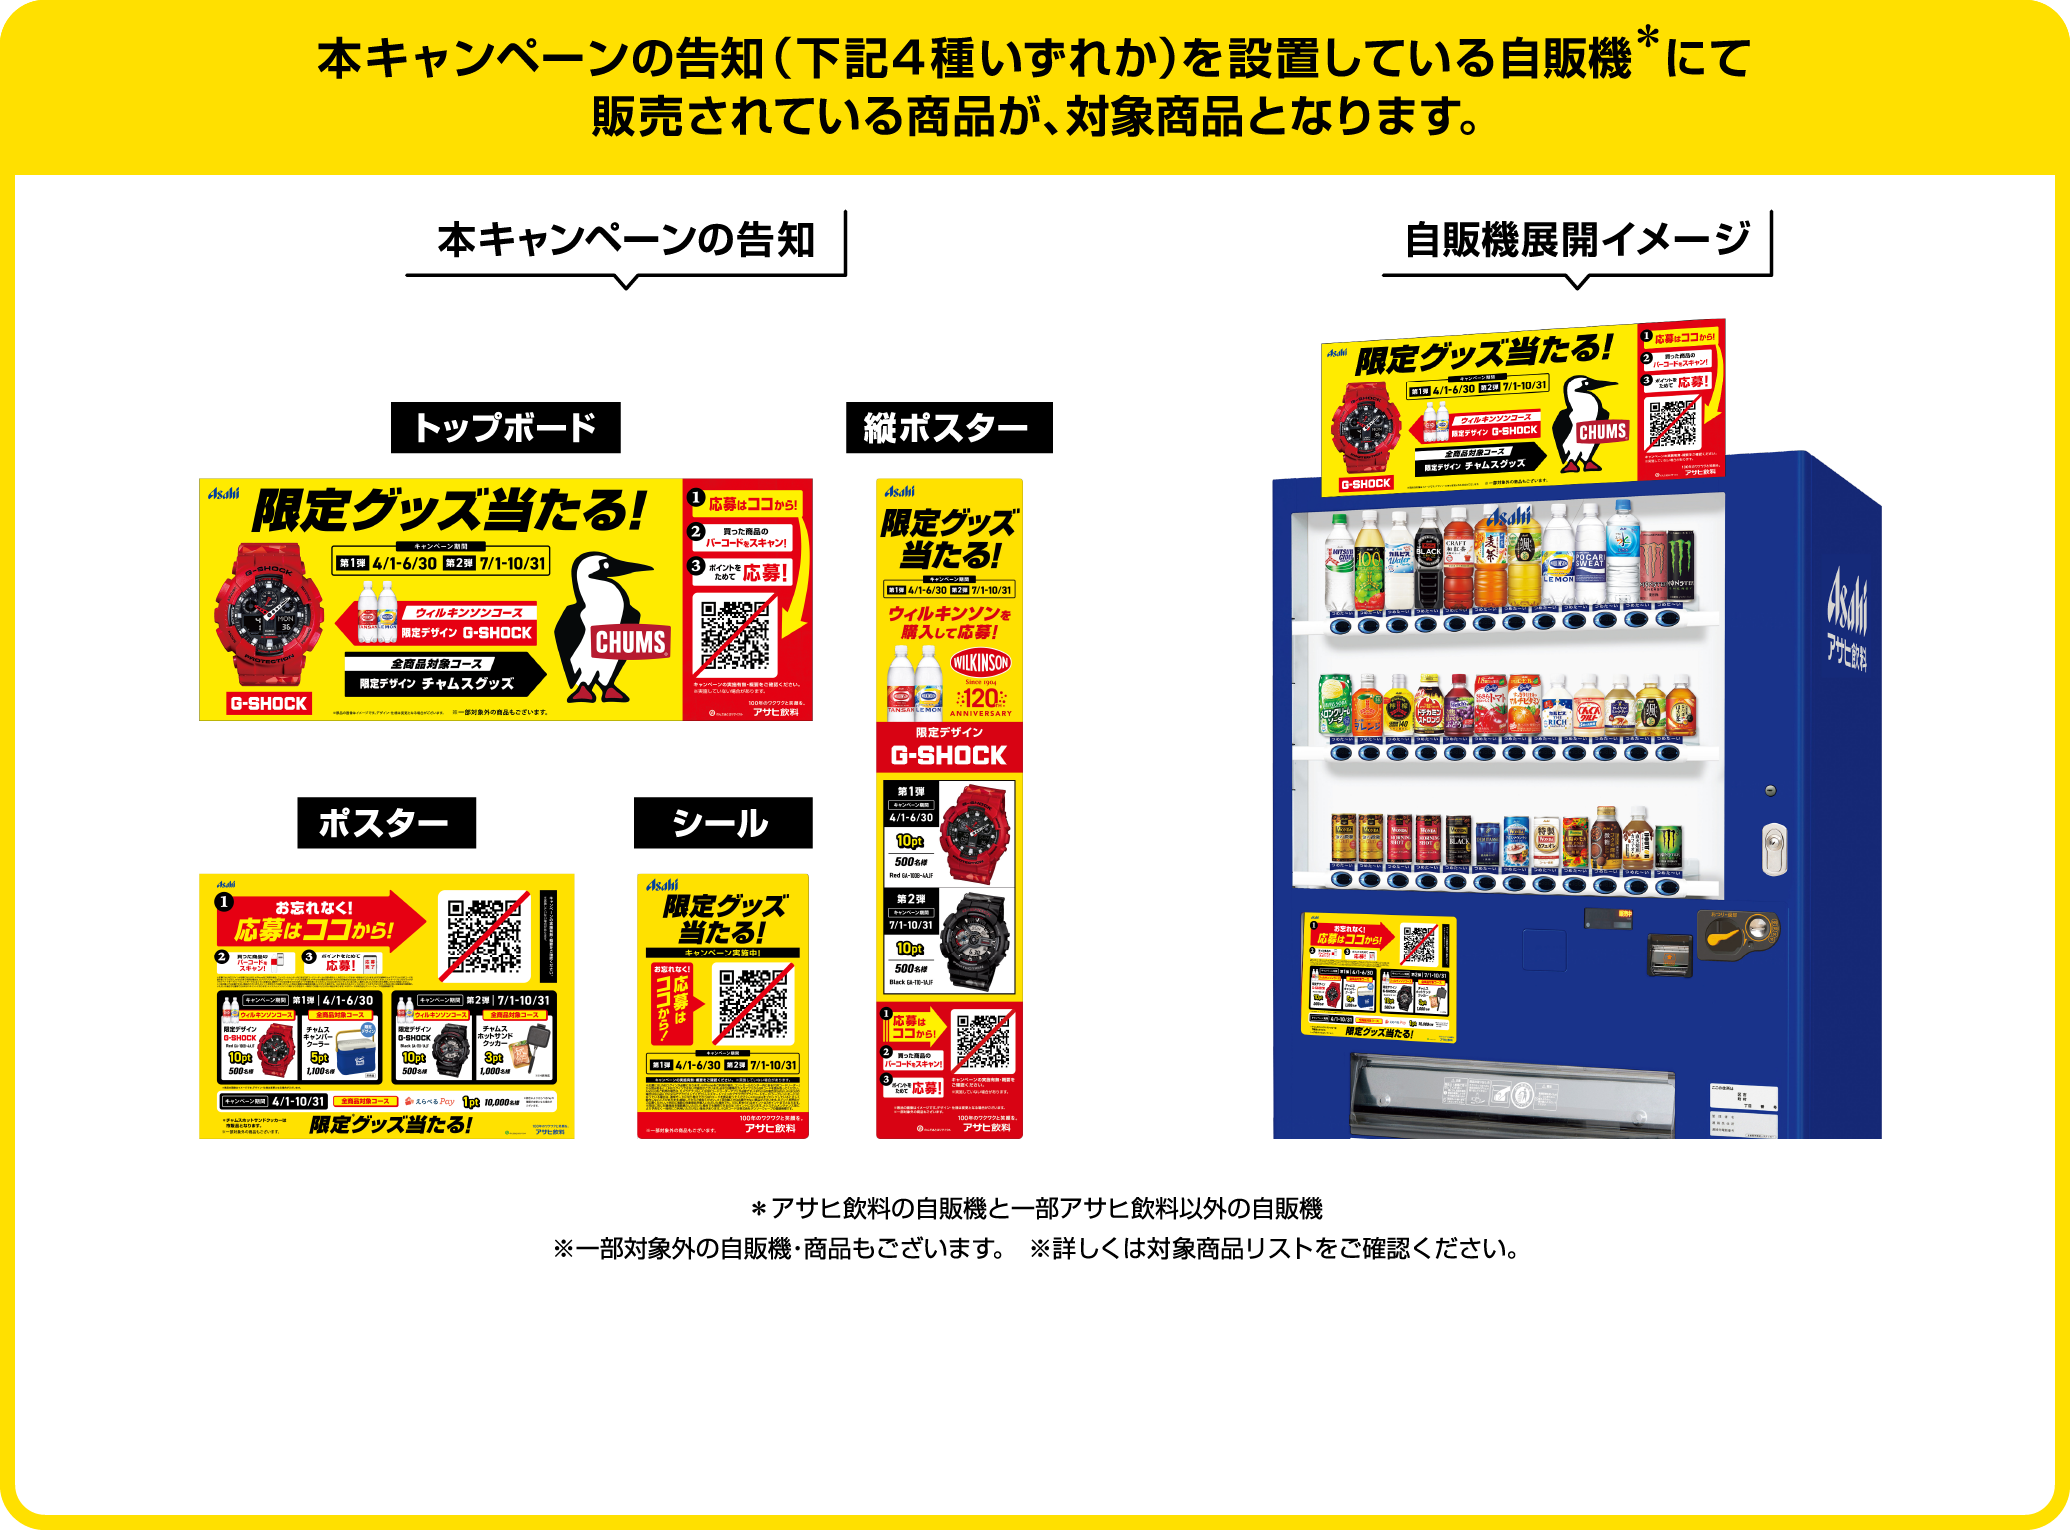 本キャンペーンの告知(下記４種いずれか)を設置している自販機にて販売されている商品が、対象商品となります。